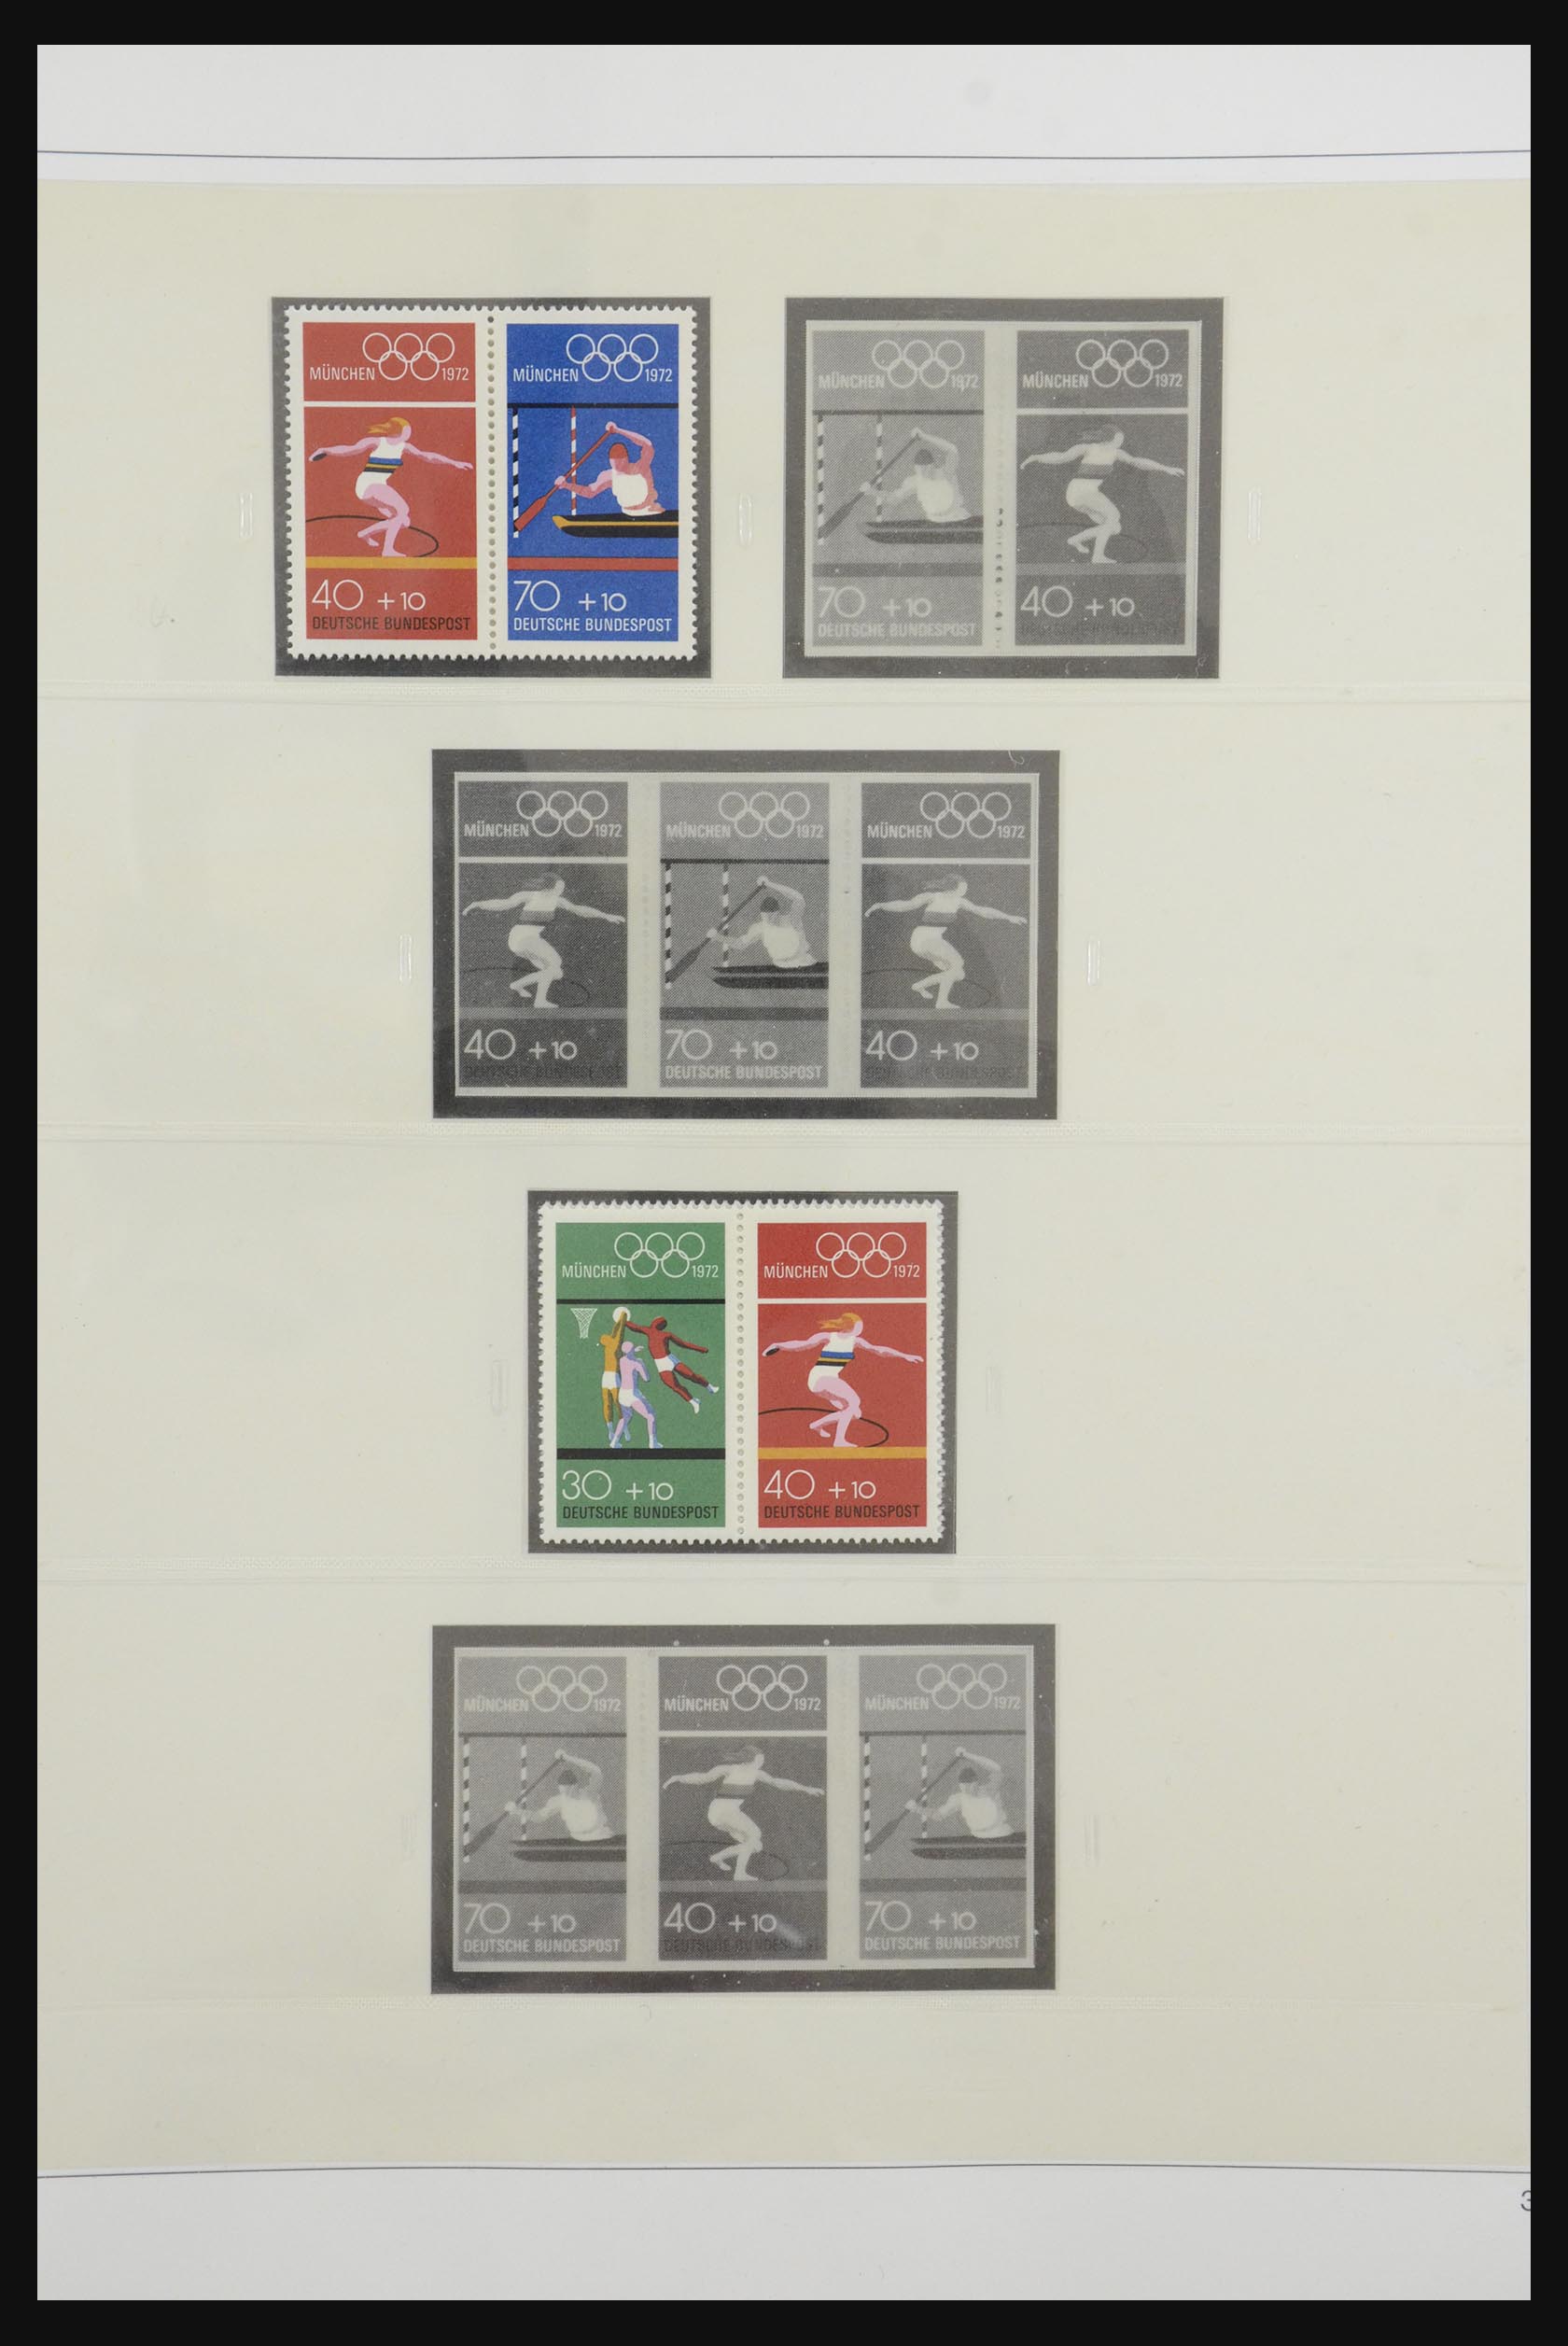 31842 043 - 31842 Bundespost combinations 1951-2003.